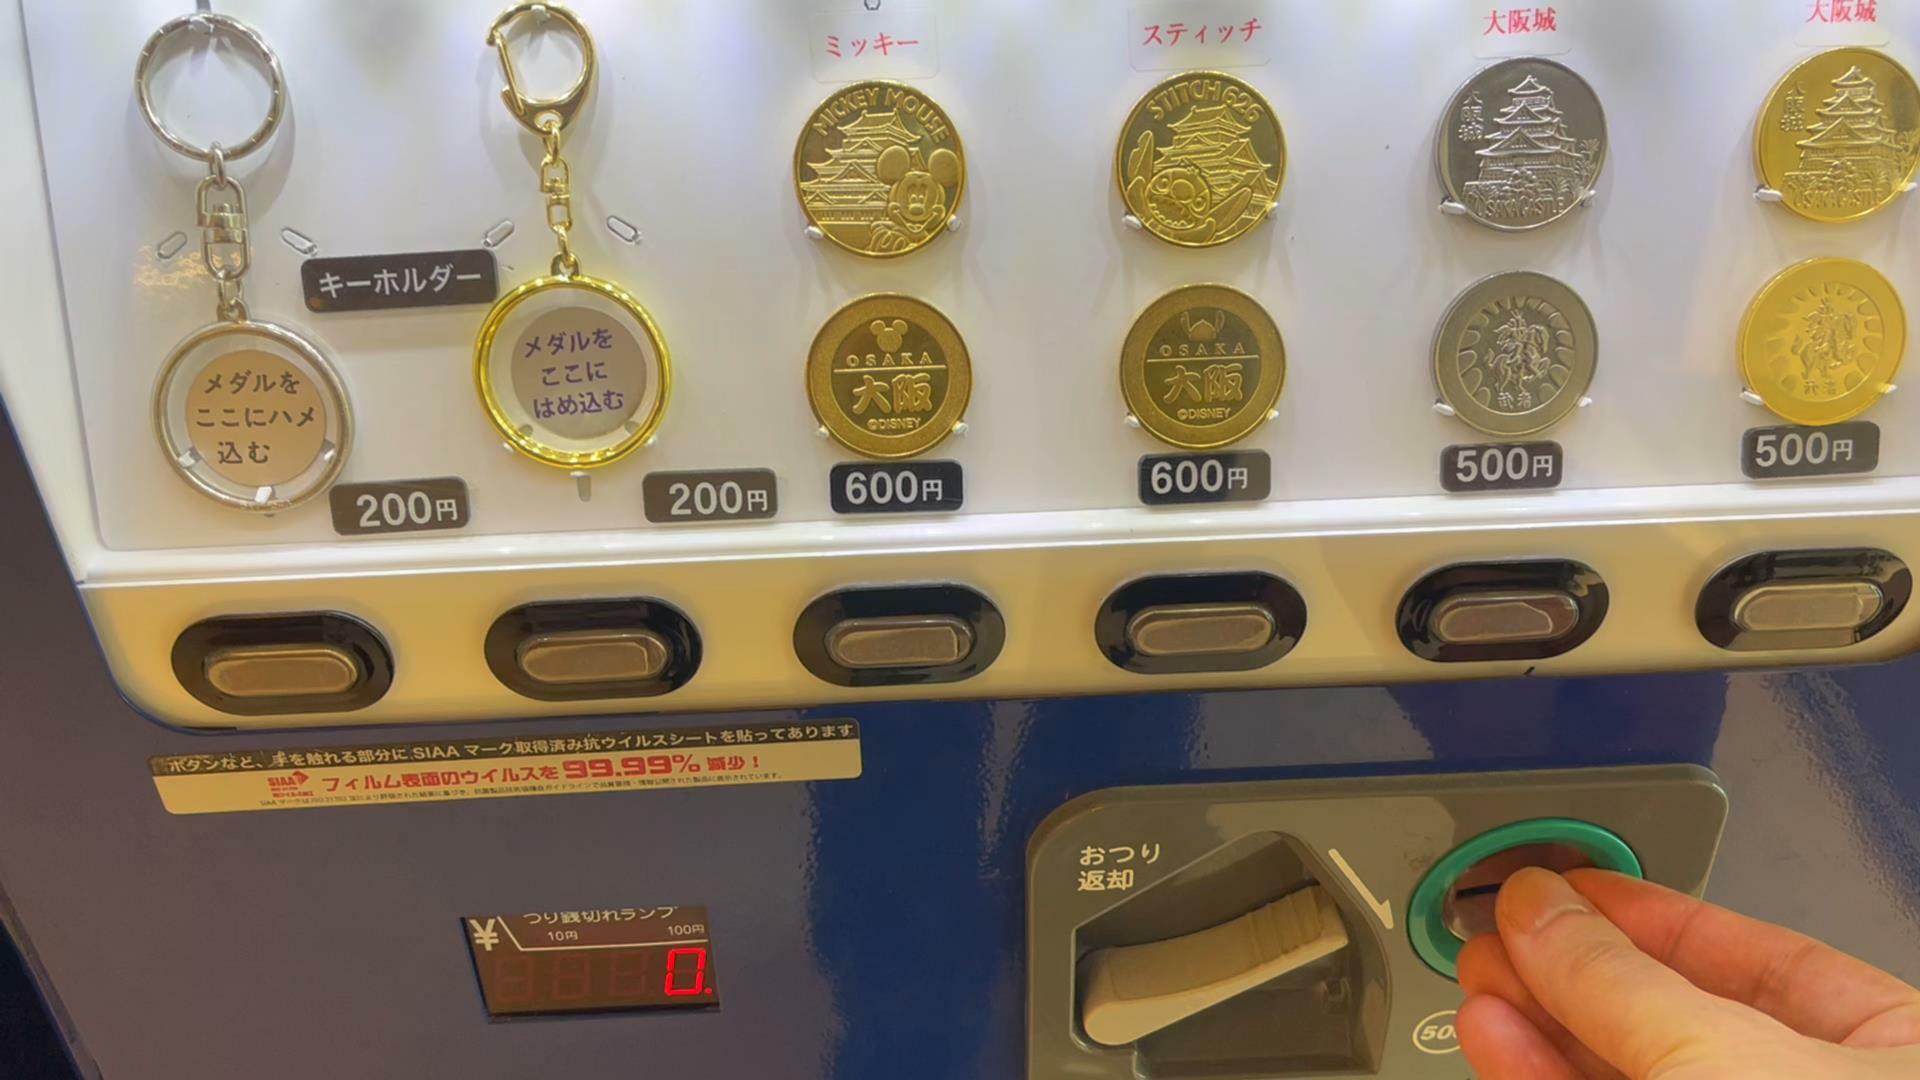 大阪城のメダル販売機　キーホルダー2種とメダル4種が販売されています